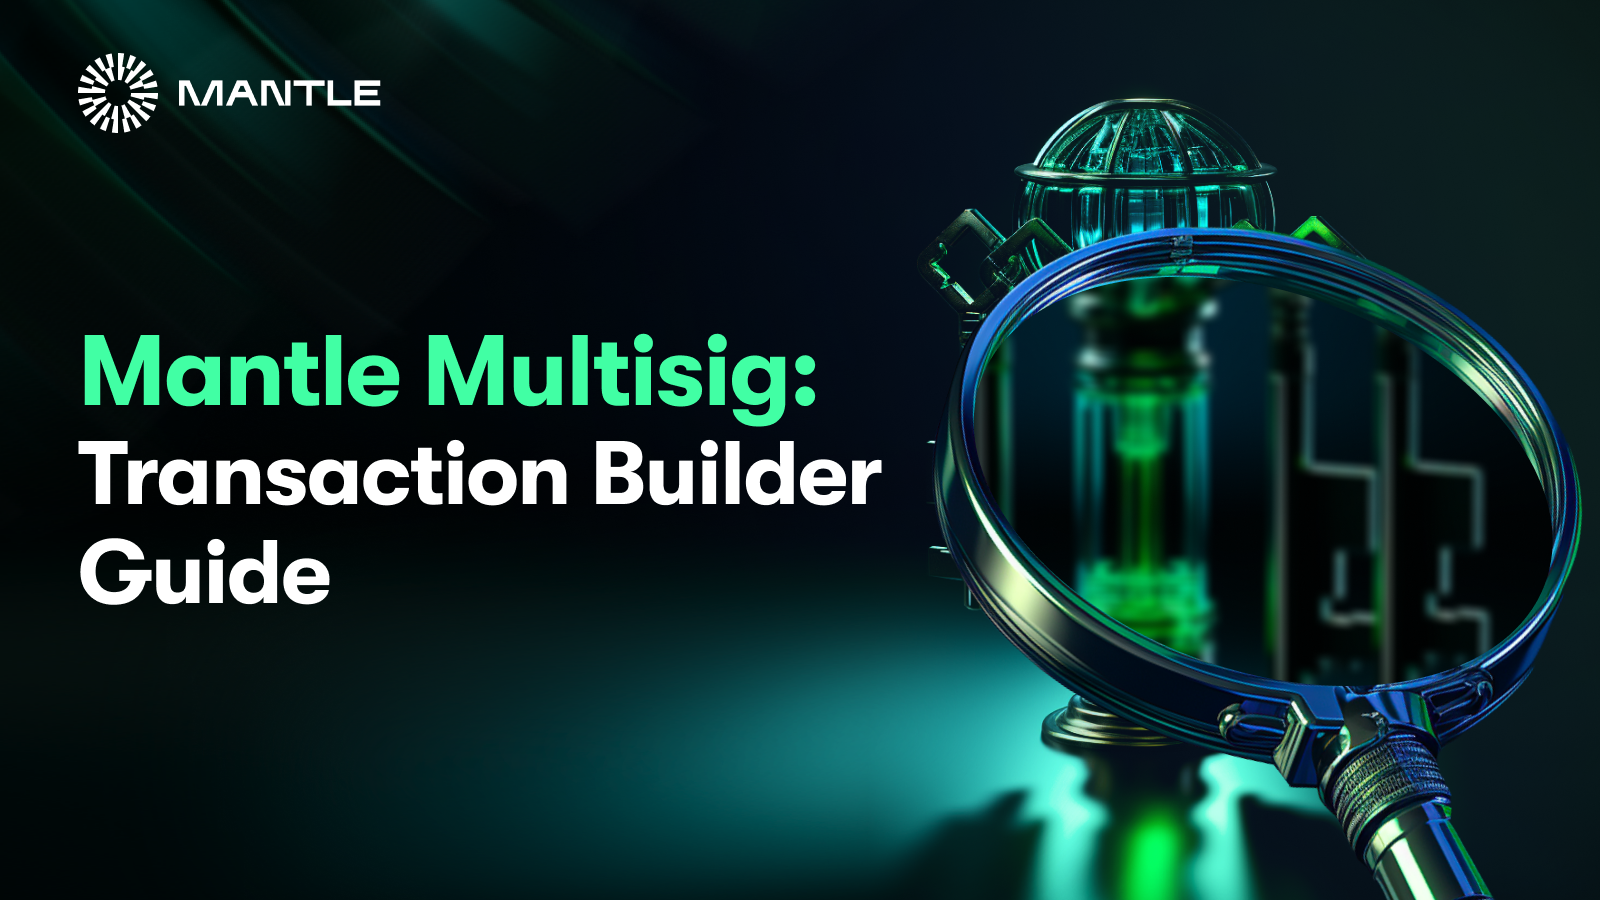 Mantle Multisig: Transaction Builder Guide